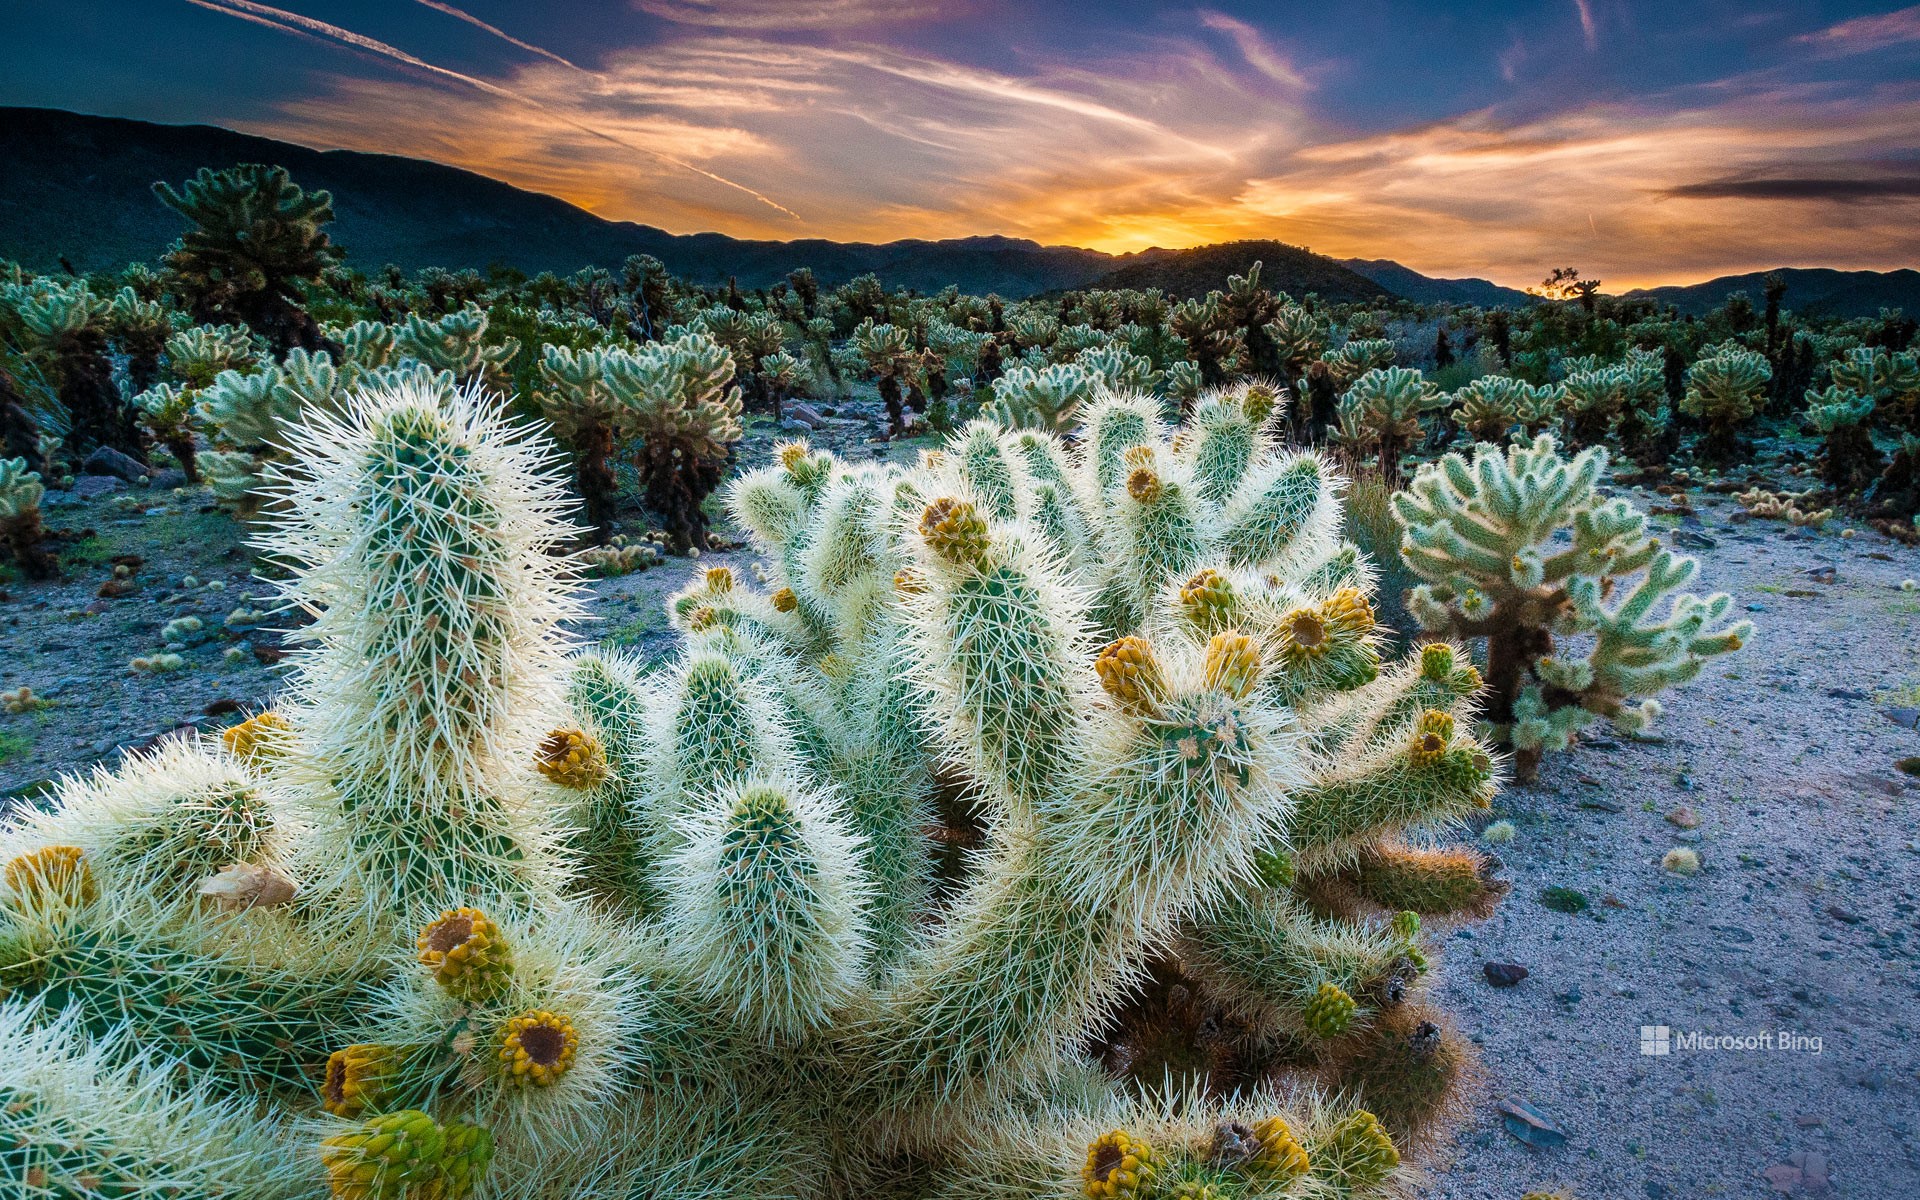 Cholla Cactus Garden, Joshua Tree National Park, California, USA